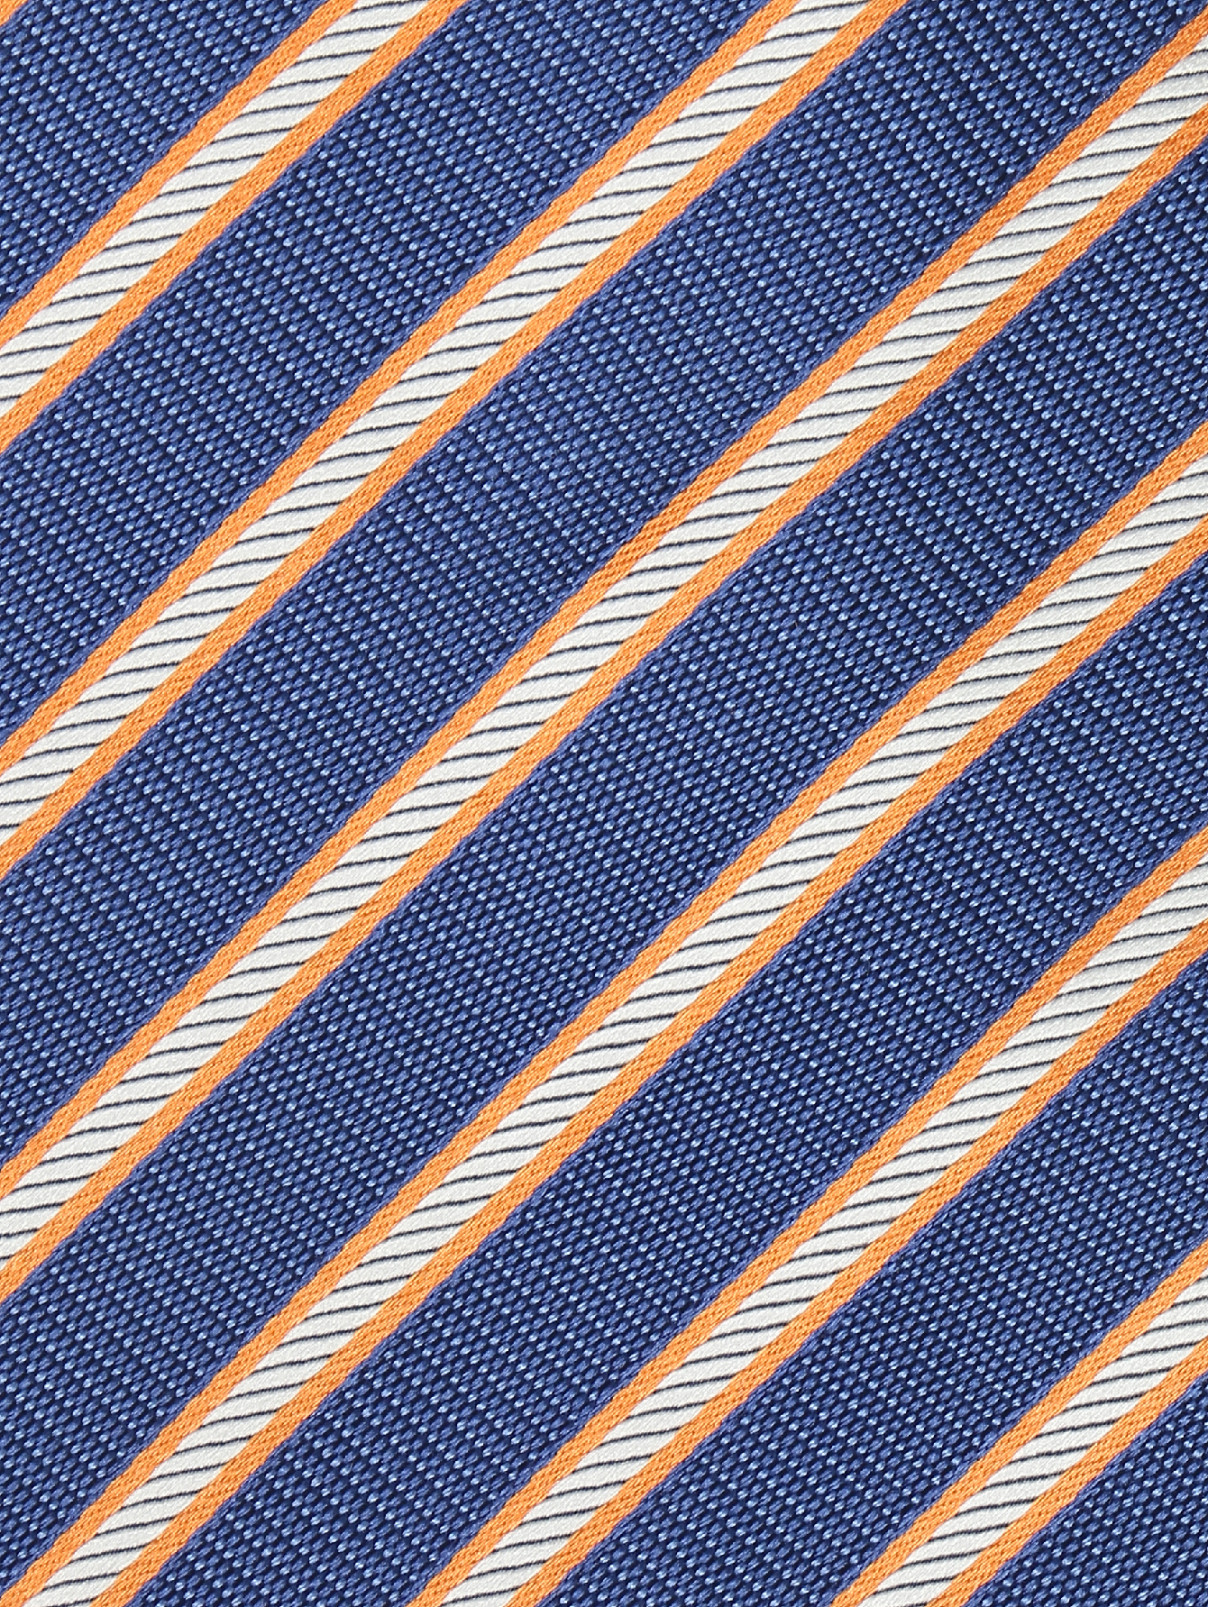 Галстук из шелка с узором полоска Pal Zileri  –  Деталь  – Цвет:  Синий